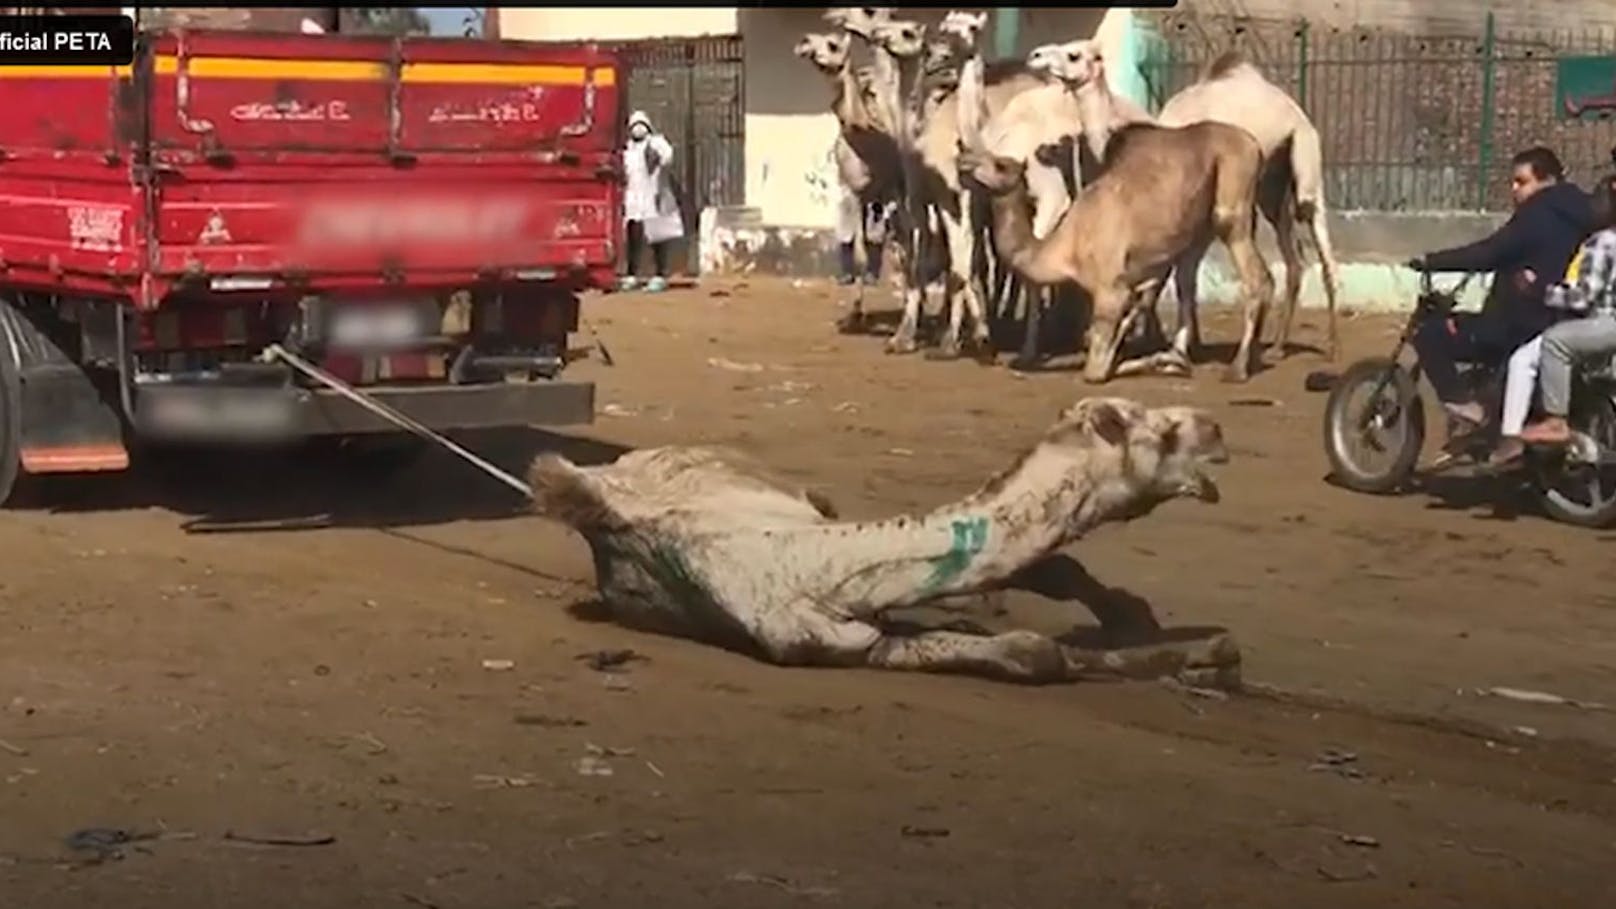 Unfassbare Aufnahmen! Kamele werden furchtbar gequält